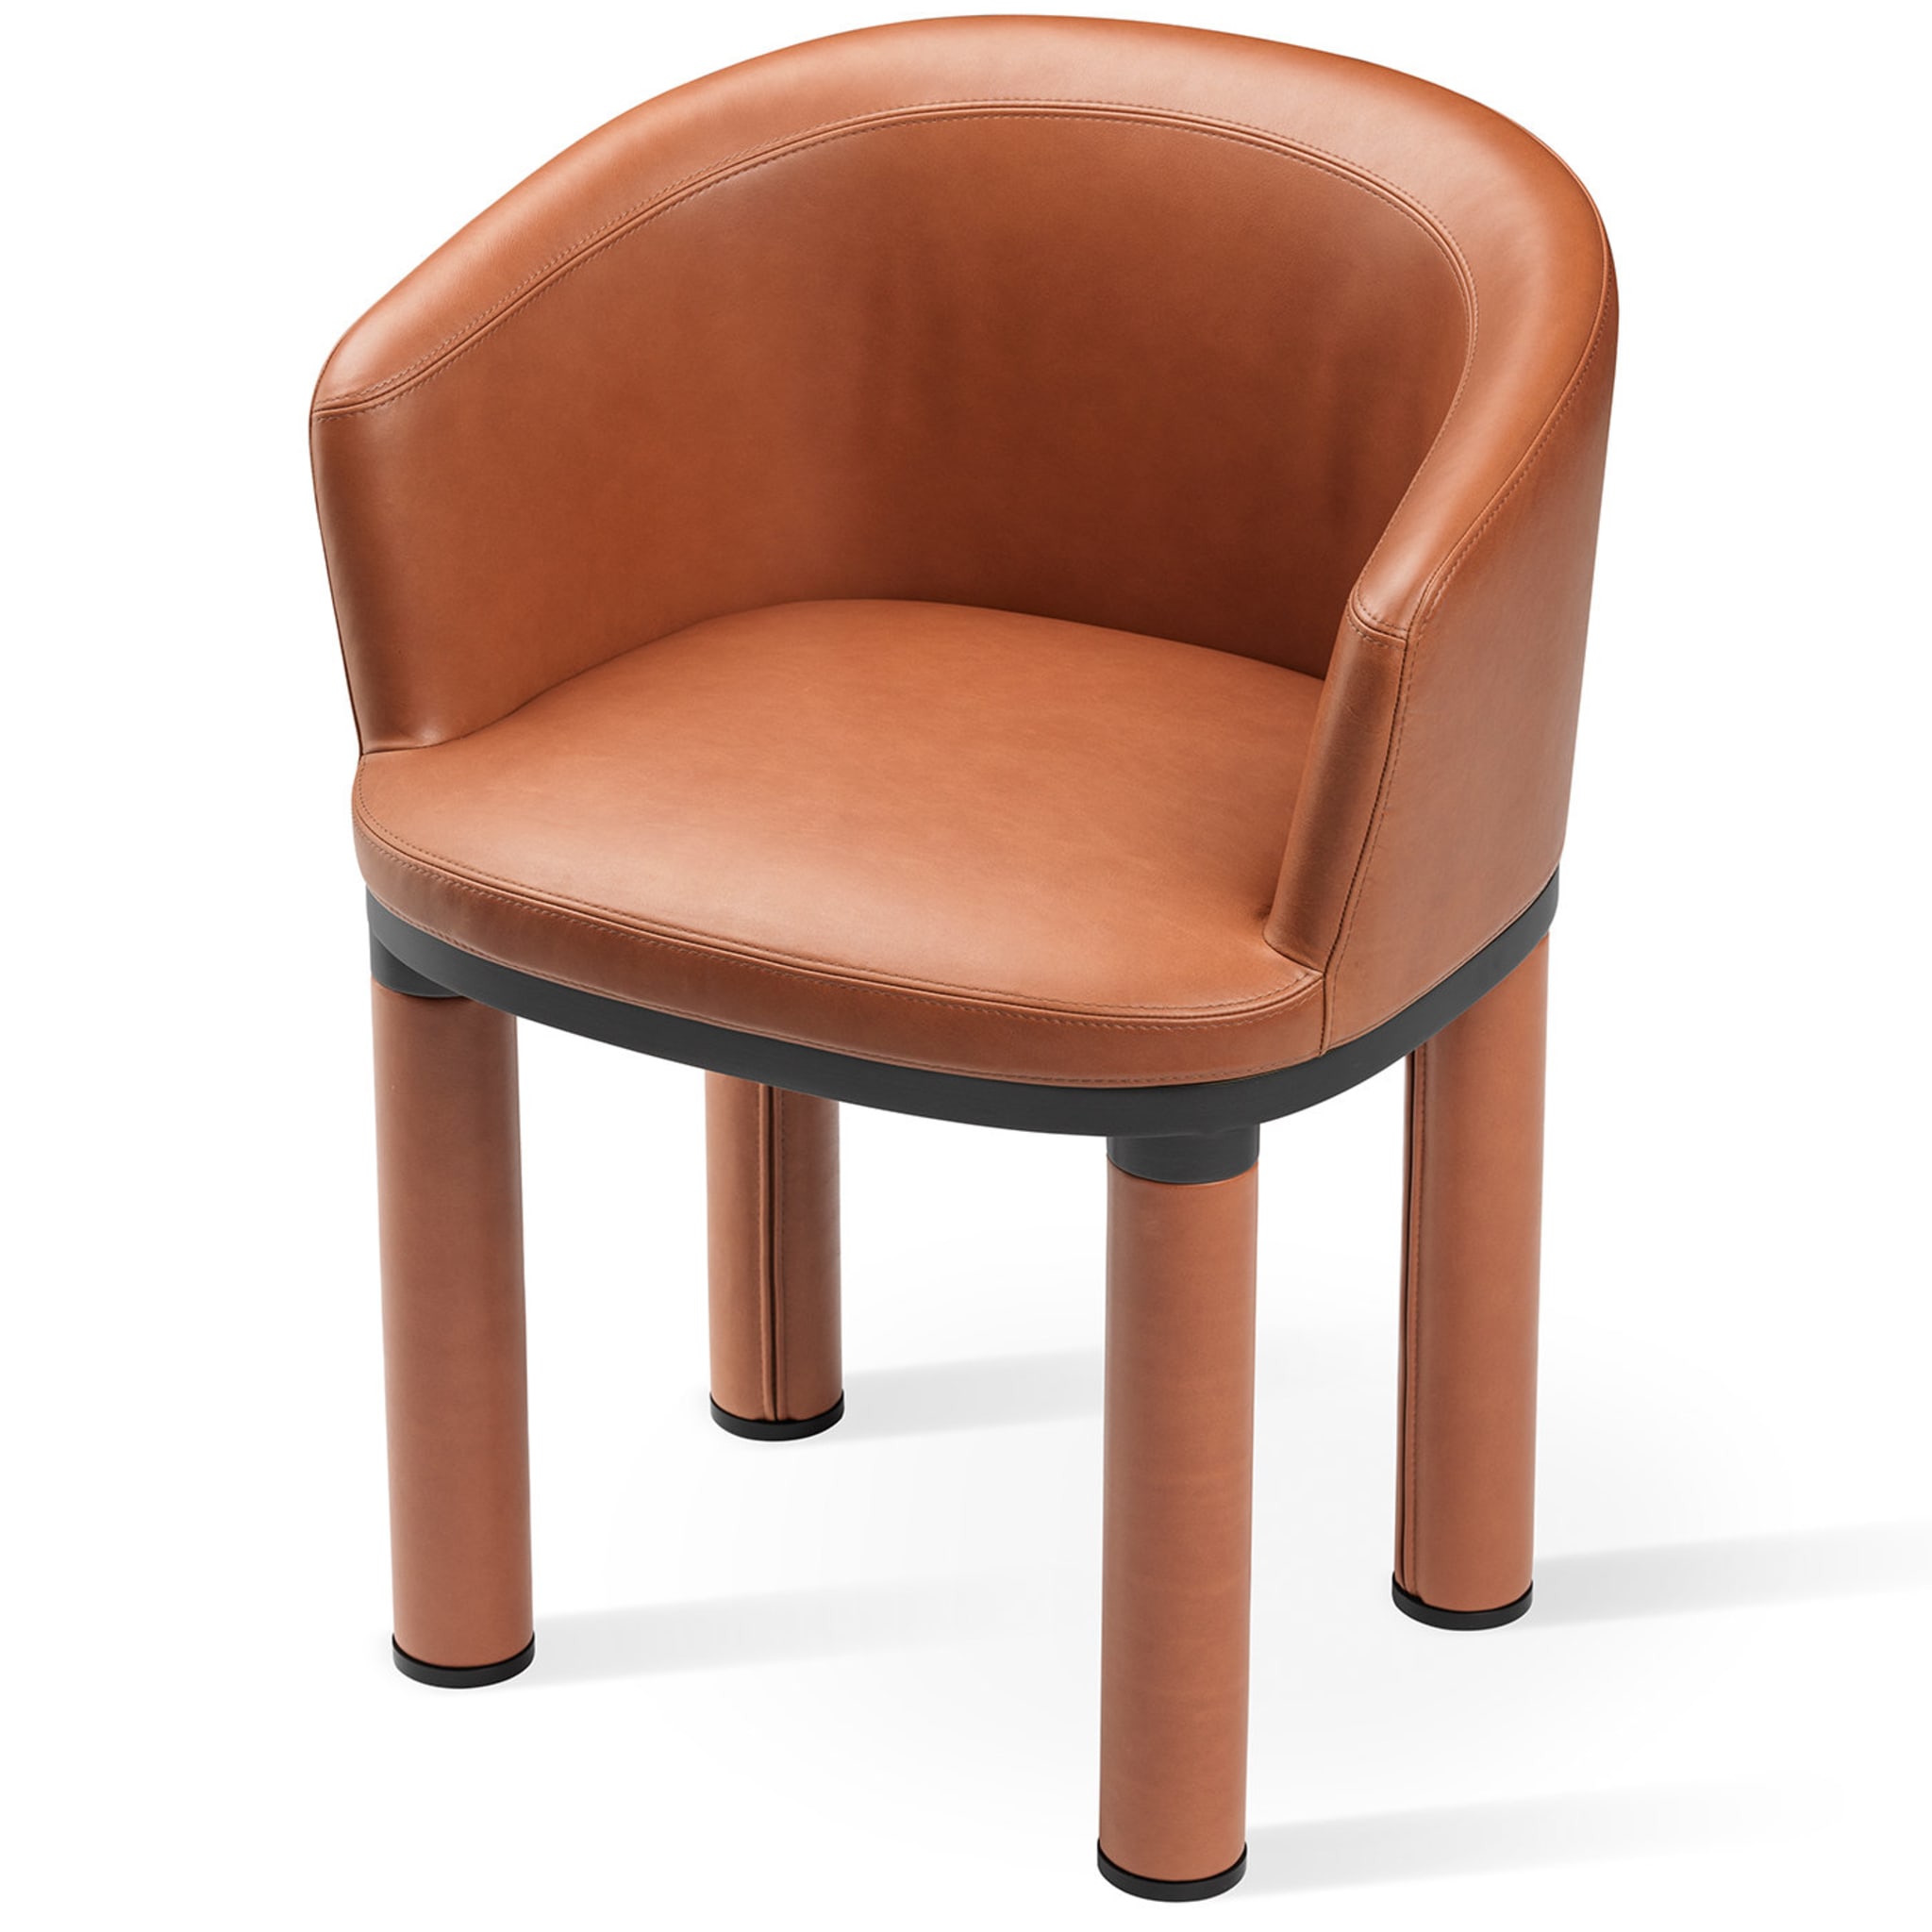 Bold Orange Chair - Alternative view 2